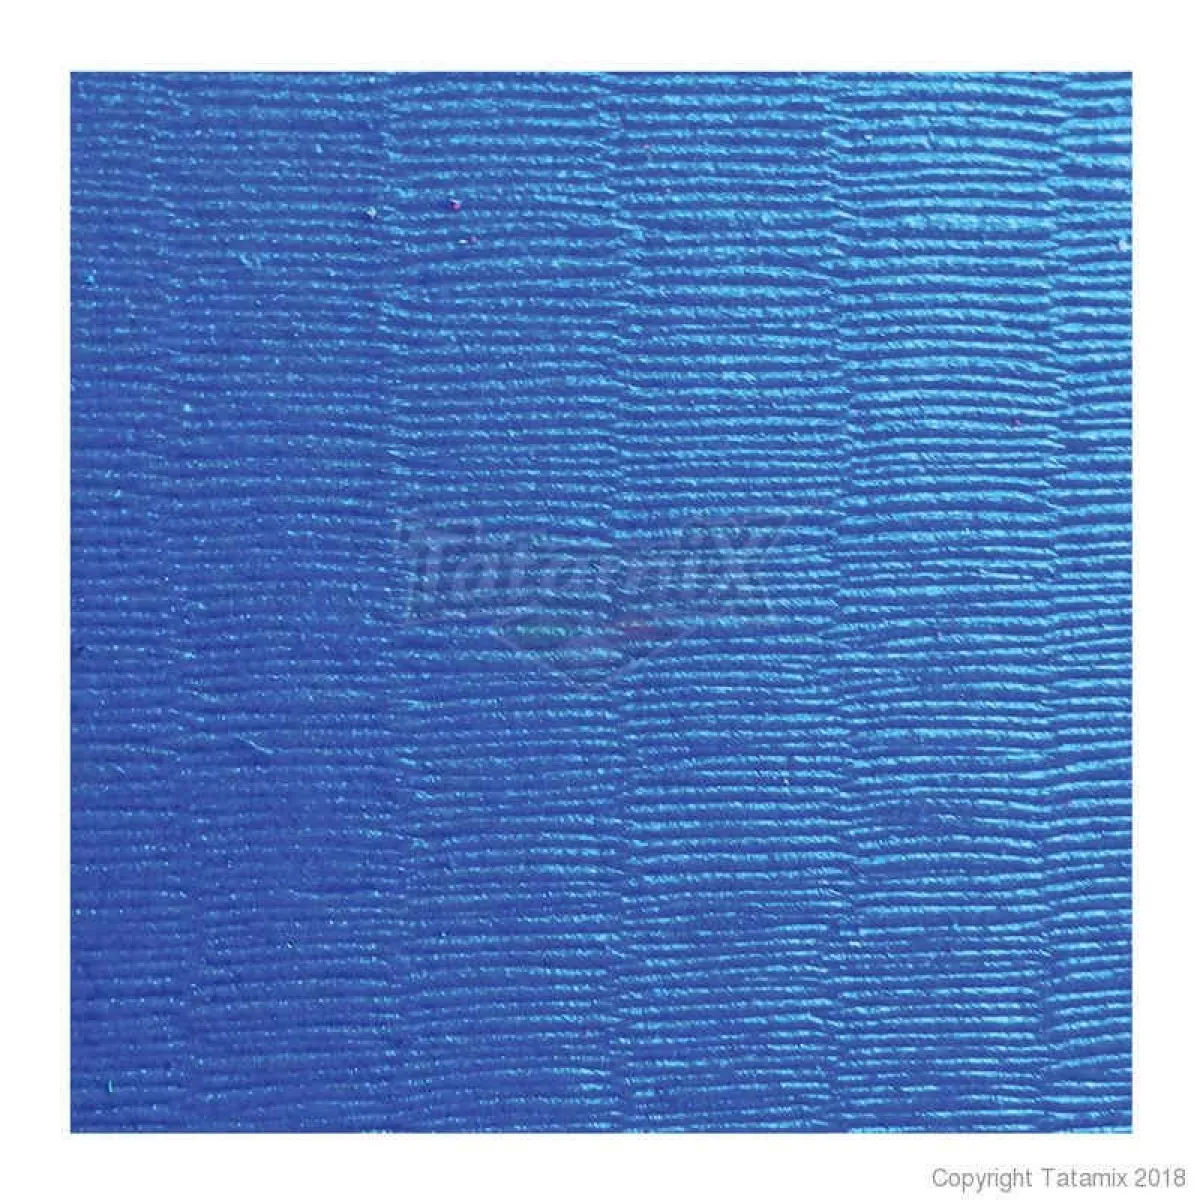 Colchonetas para artes marciales J40D azul/gris/amarillo 100 cm x 100 cm x 4 cm